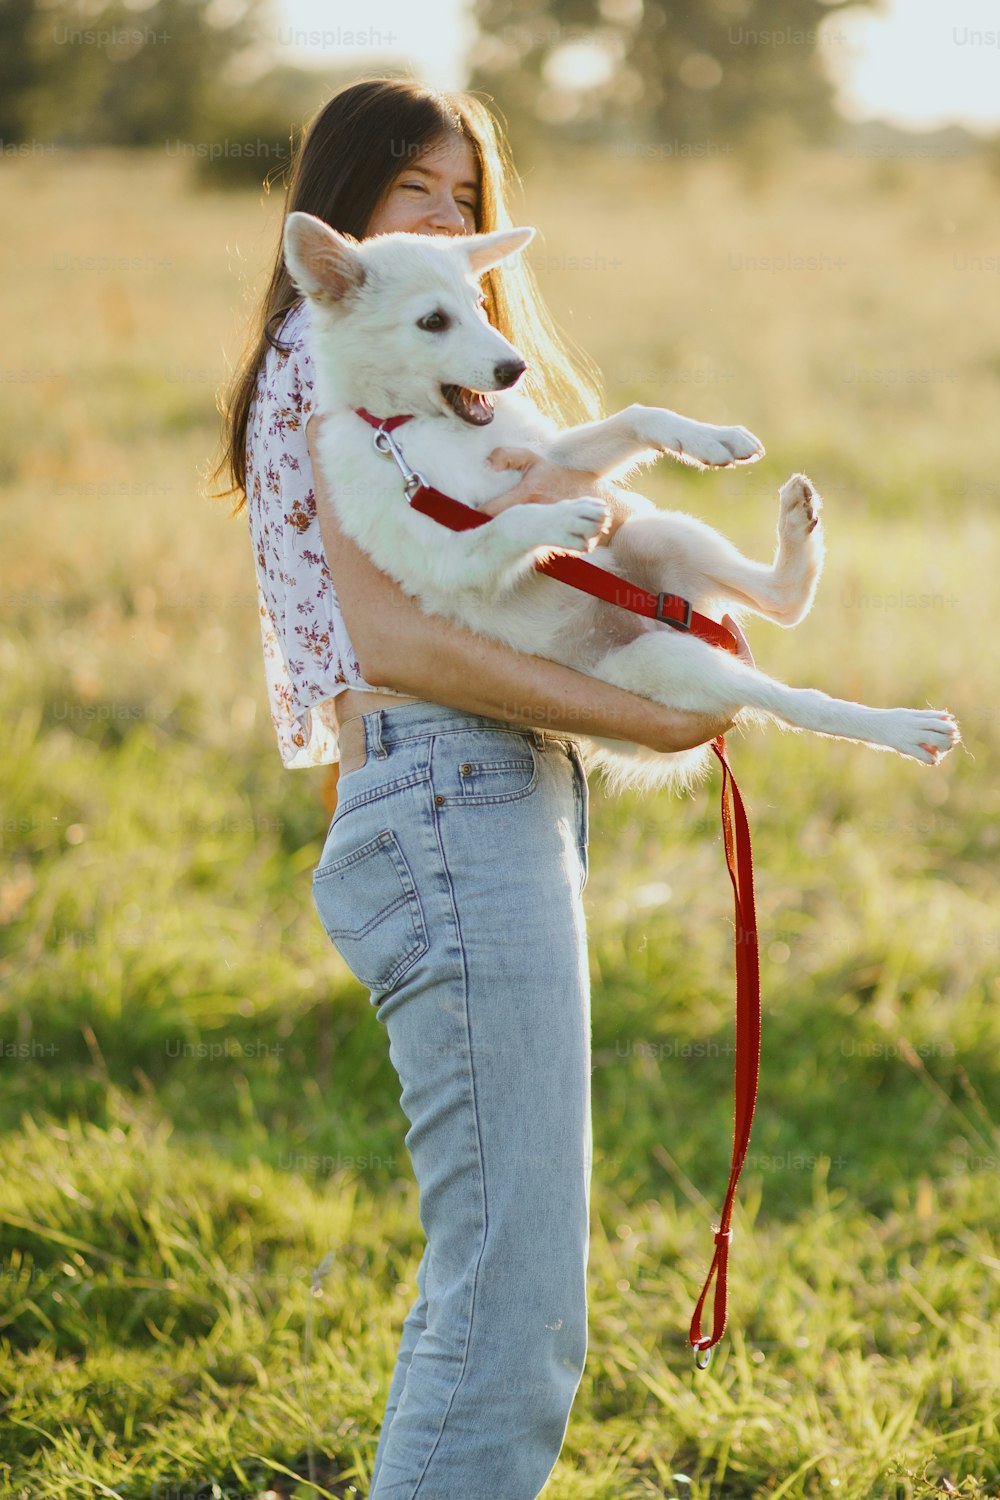 여름 초원의 따뜻한 일몰 빛 속에서 귀여운 하얀 강아지와 놀고 있는 세련된 행복한 여자. 캐주얼한 젊은 여성이 웃고 미친 활동적인 스위스 양치기 강아지를 안고 있다. 재미있는 순간들